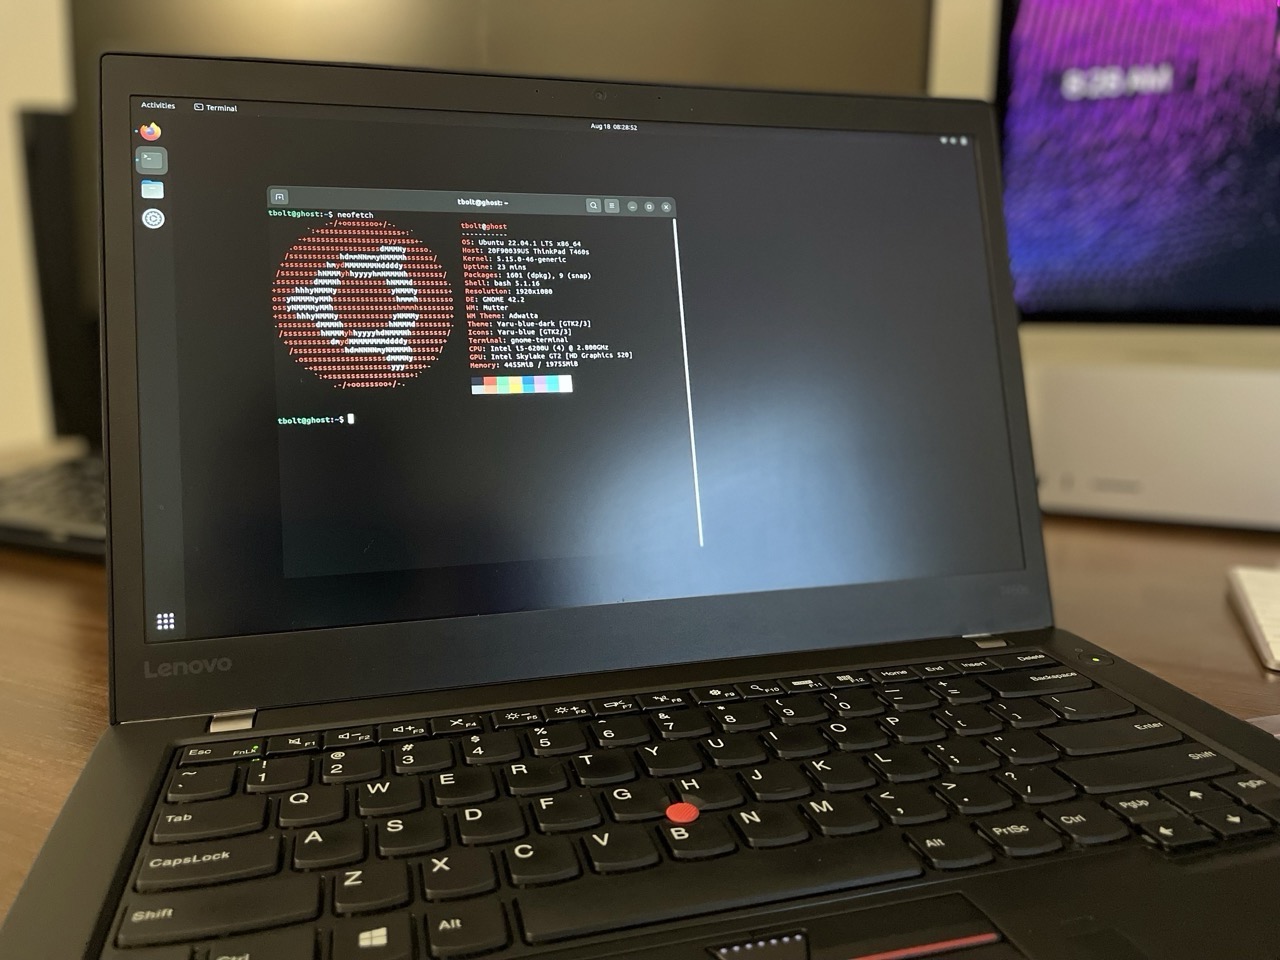 Linux Ubuntu on a Thinkpad T460s